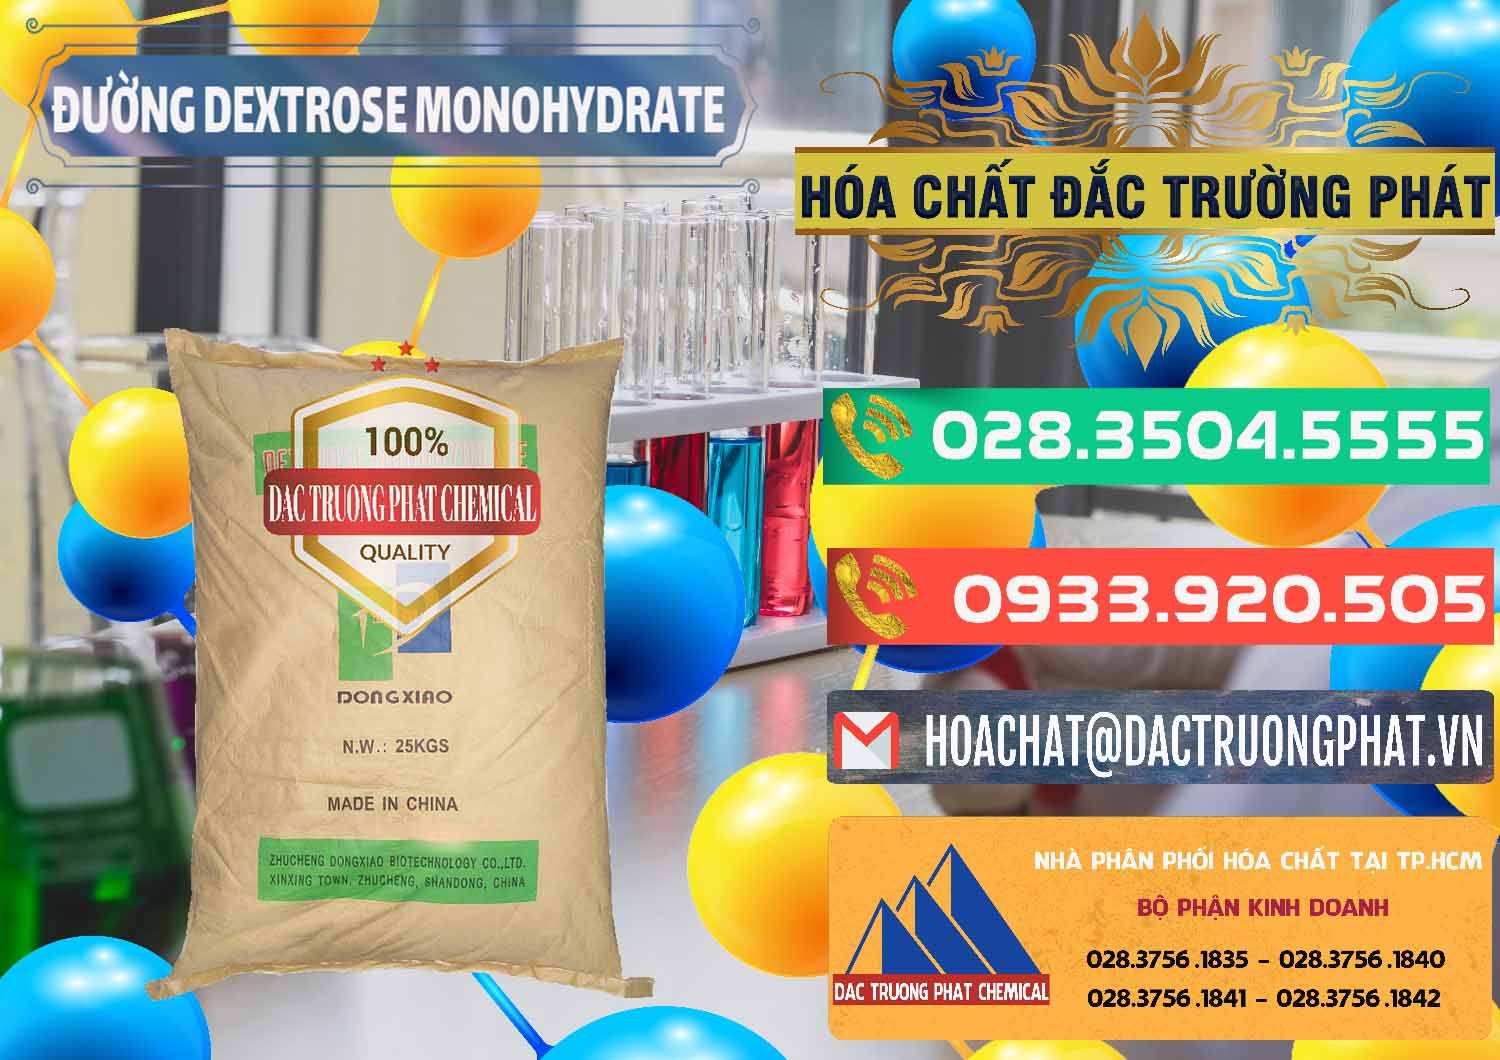 Đơn vị bán & phân phối Đường Dextrose Monohydrate Food Grade Dongxiao Trung Quốc China - 0063 - Nơi chuyên nhập khẩu và cung cấp hóa chất tại TP.HCM - congtyhoachat.com.vn